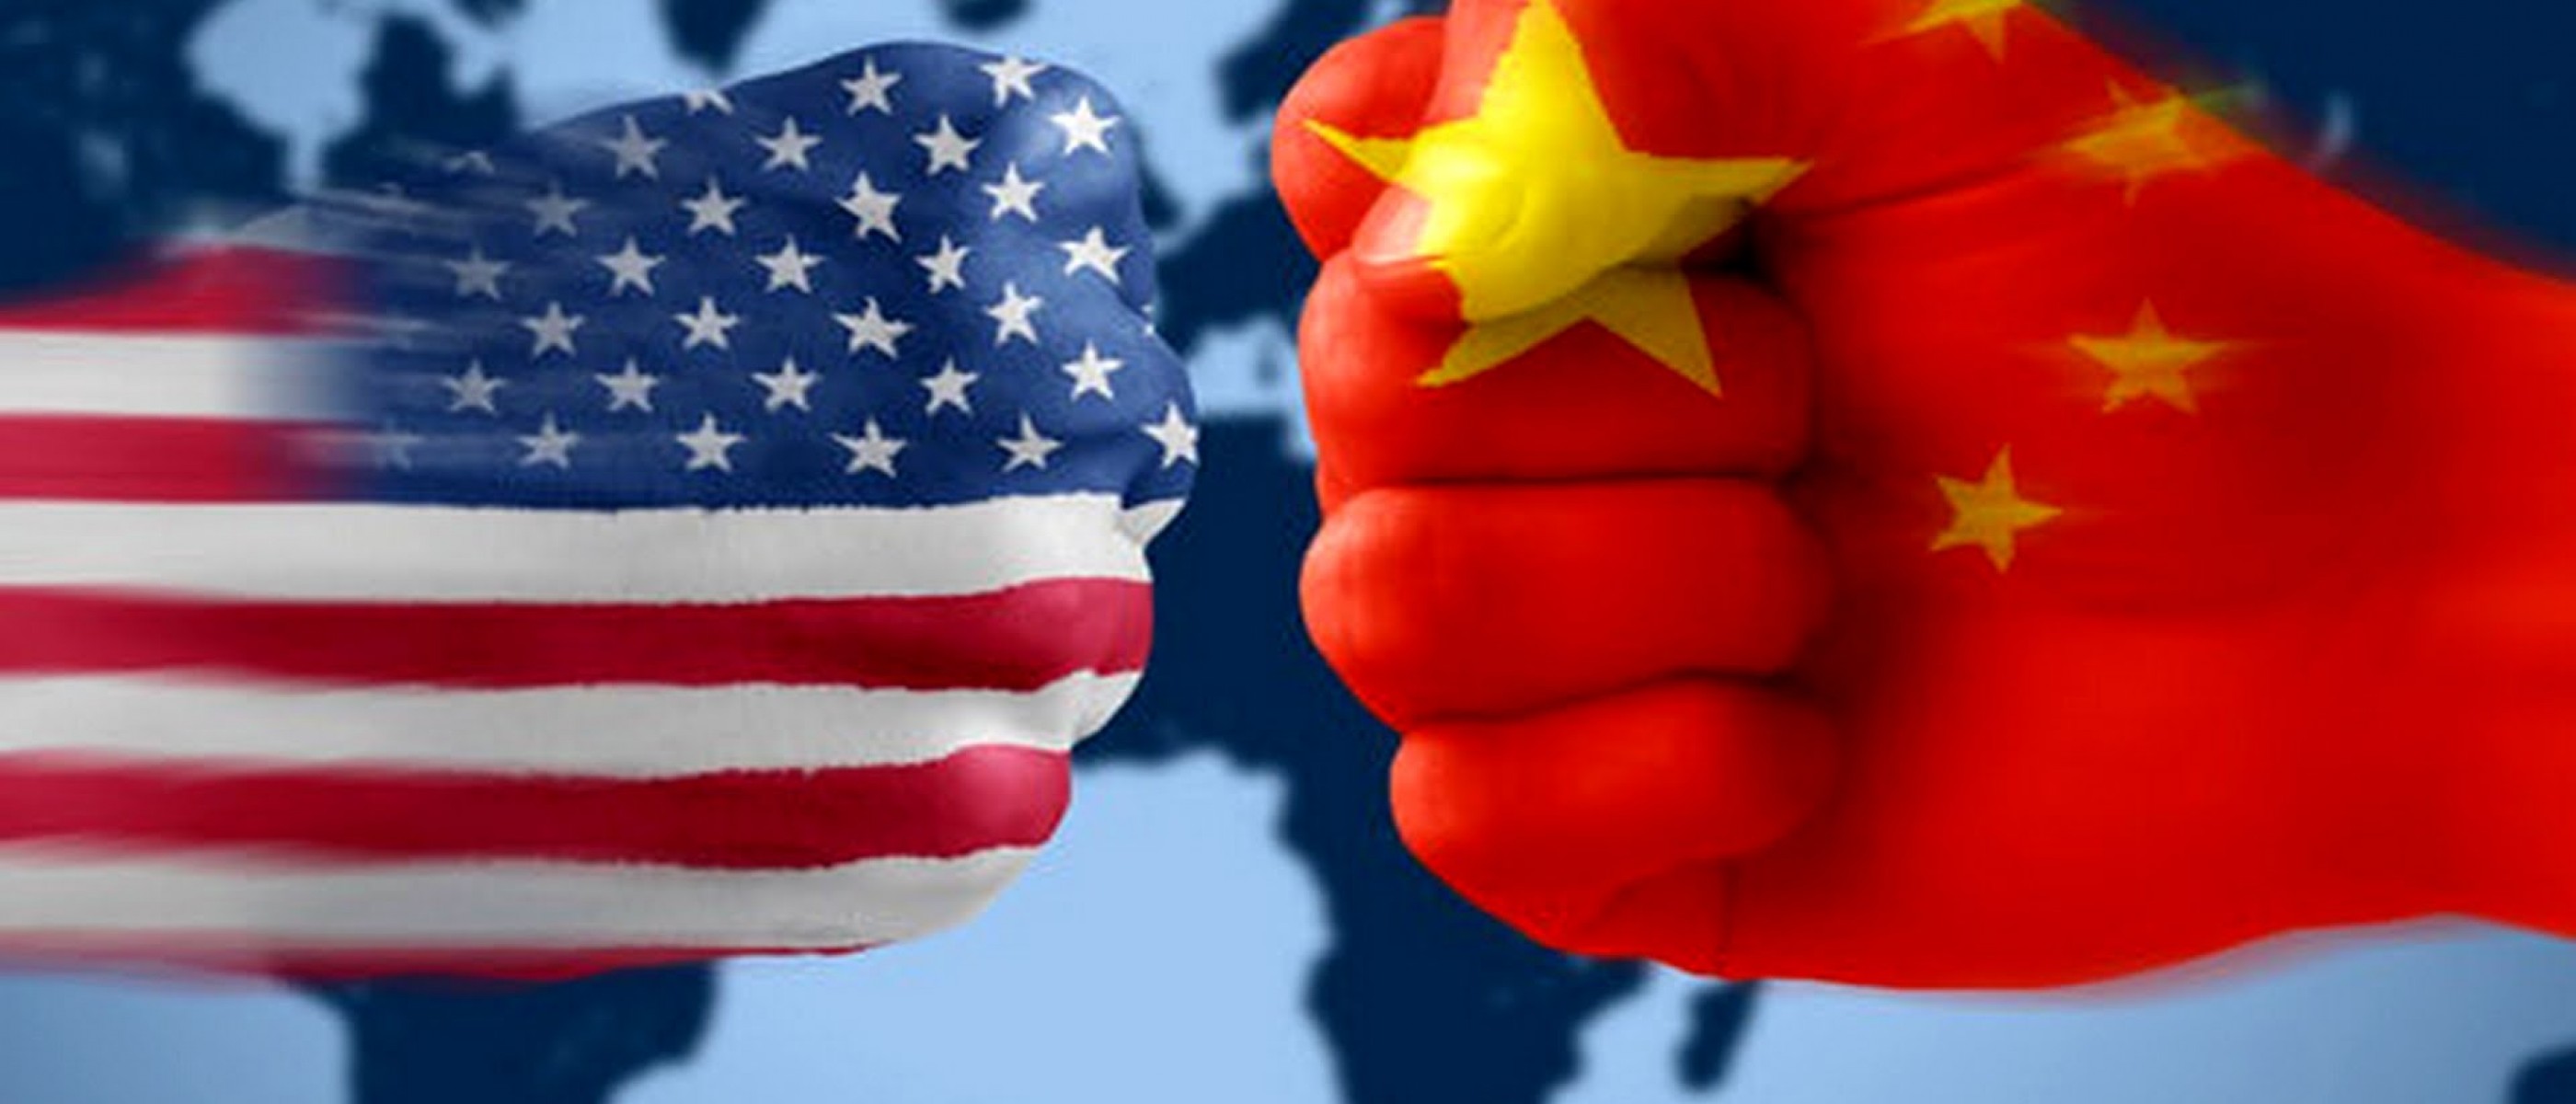 USA-Cina tensione alle stelle gli Stati Uniti hanno ordinato la chiusura del consolato cinese di Houston USA-Cina tensione alle stelle